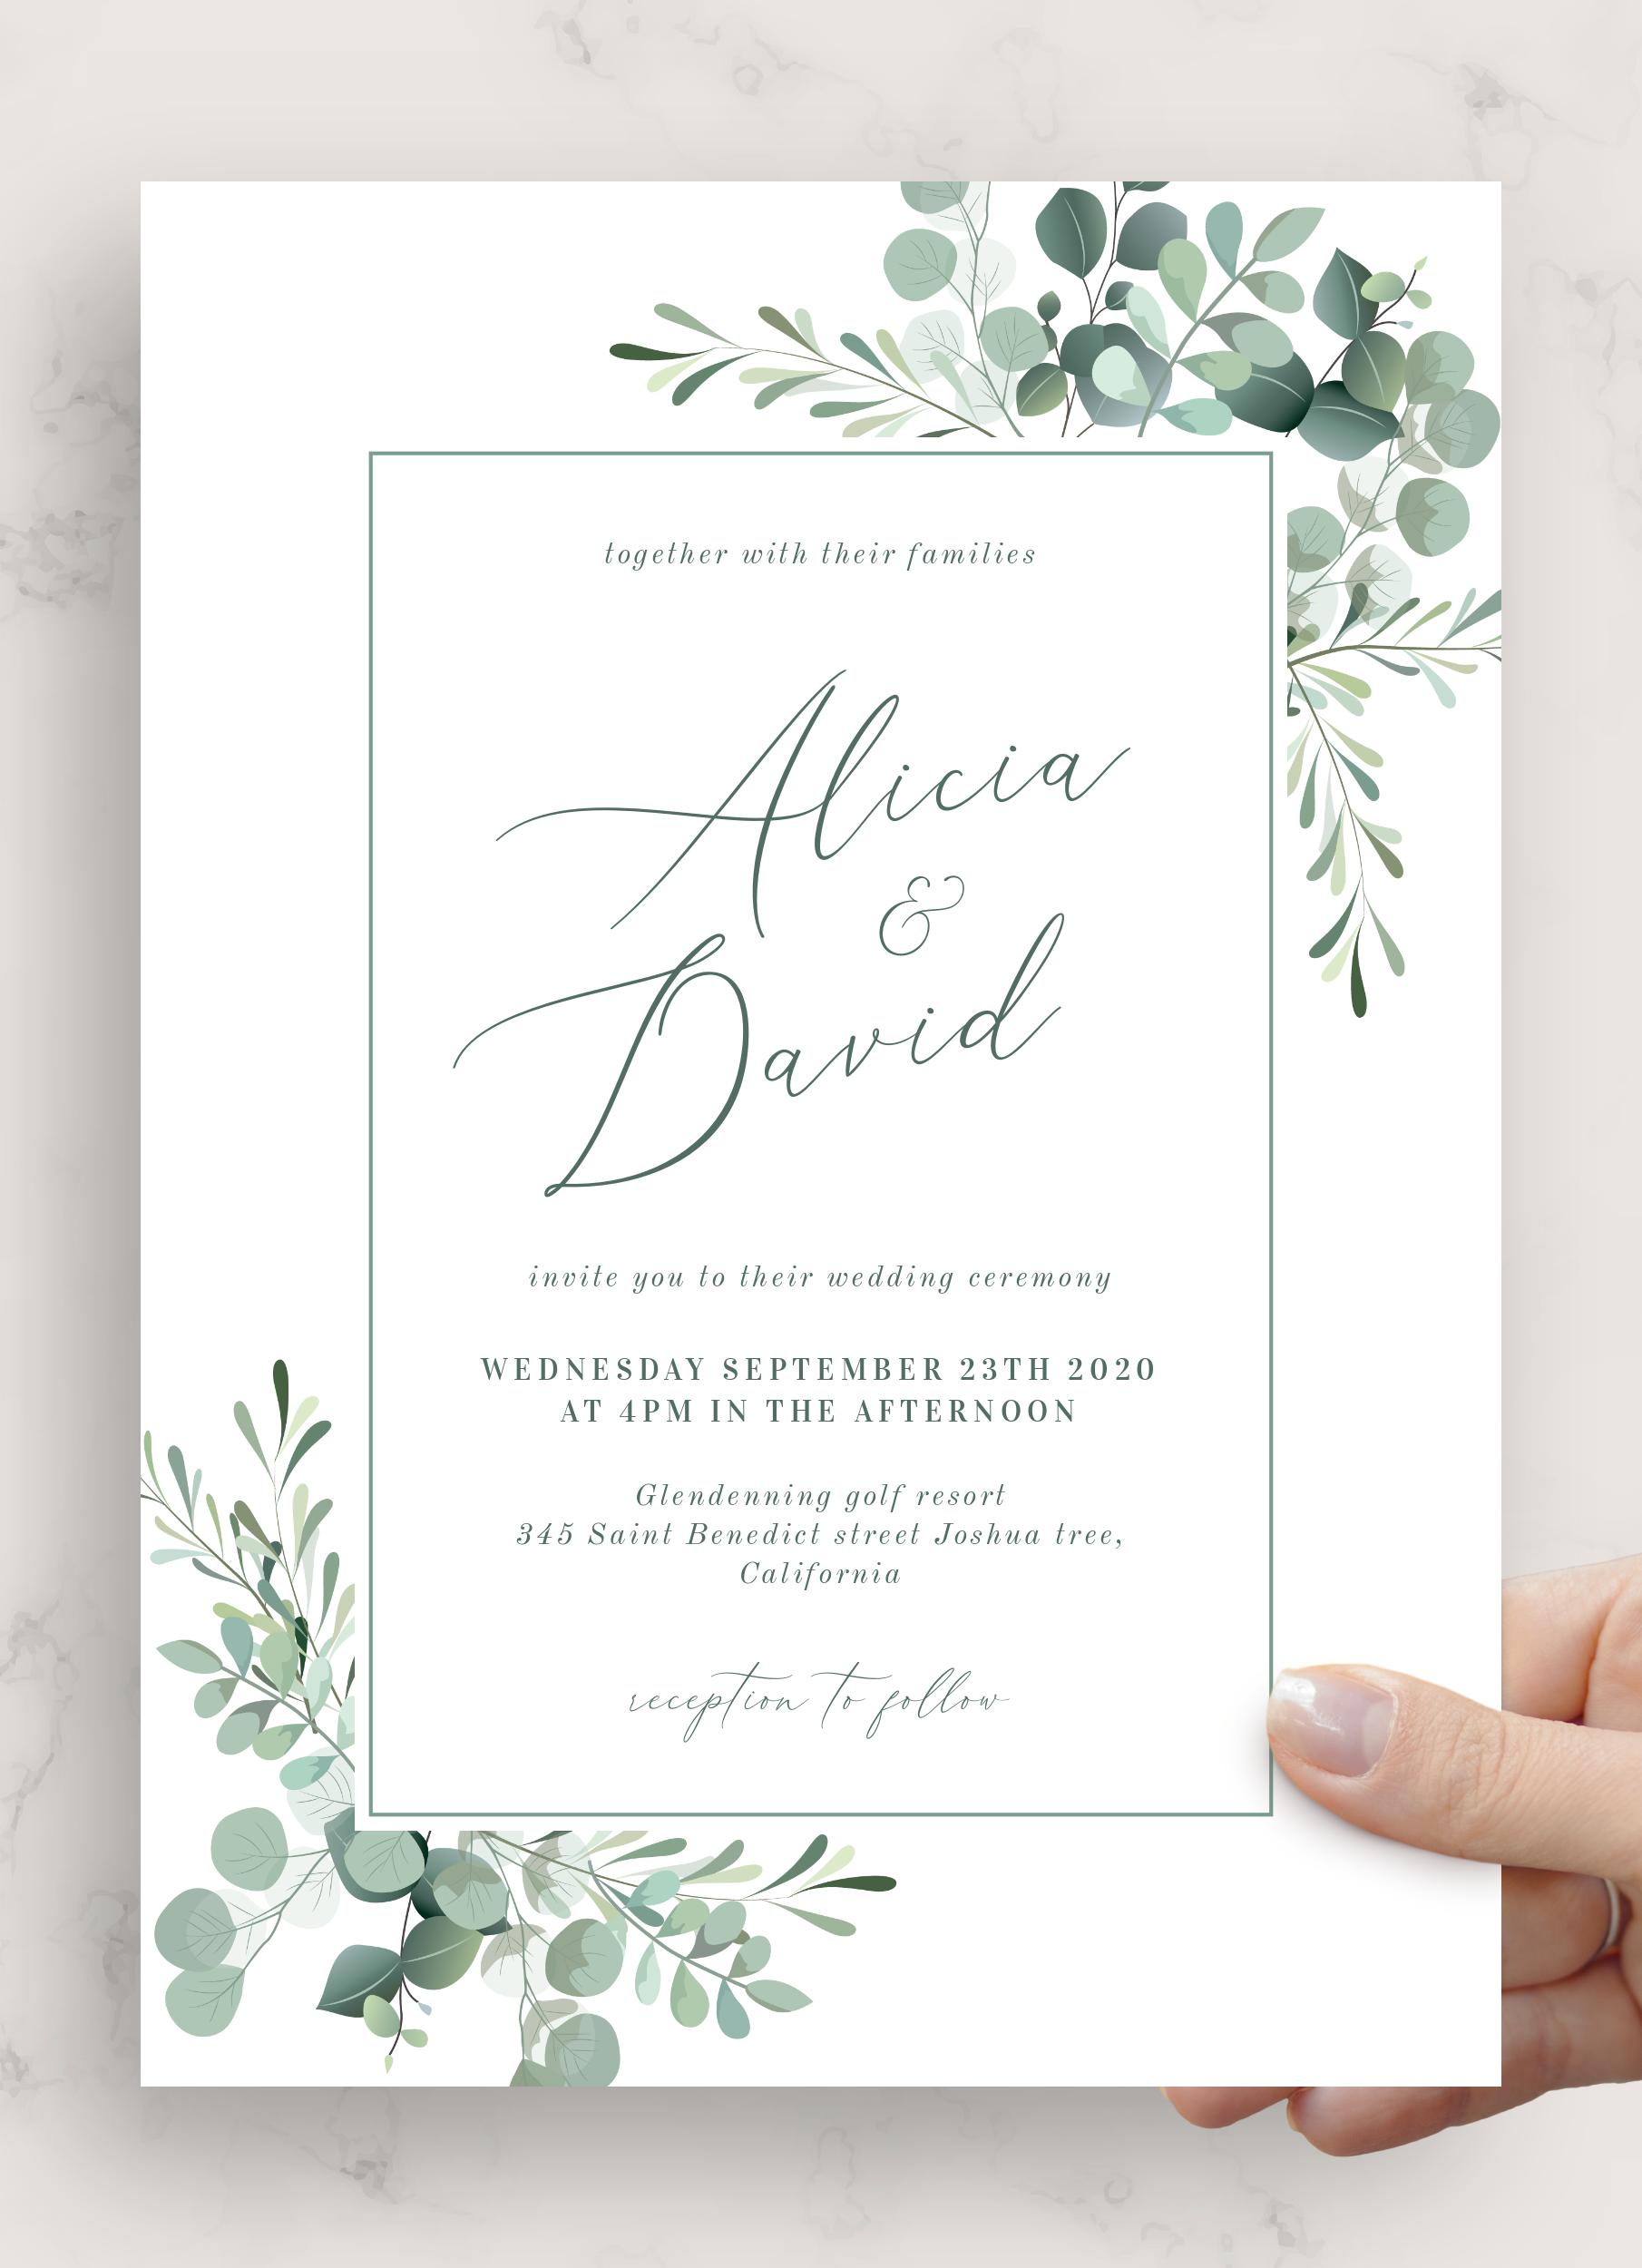 rustic-wood-wedding-invitation-rustic-invites-wood-and-lace-invitation